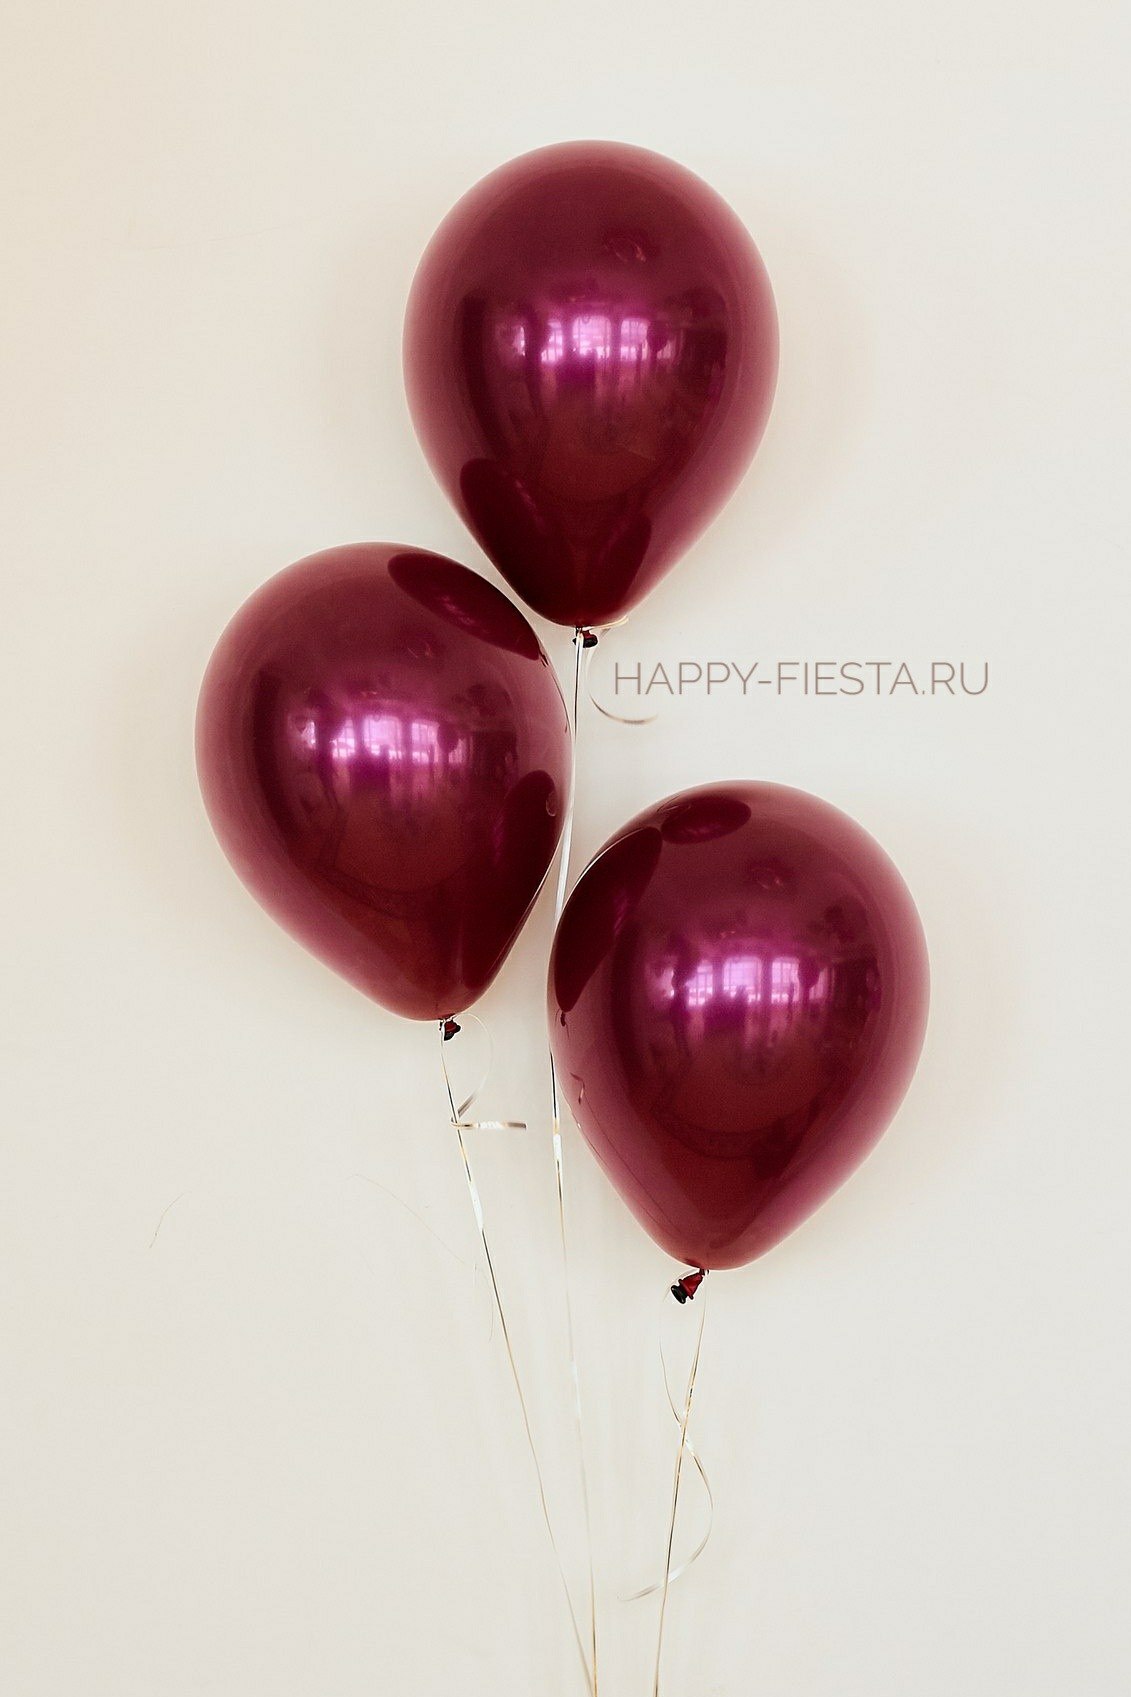 Латексный воздушный шар Cherry купить в магазине товаров для праздника Fiesta с быстрой доставкой по Нижнему Новгороду и области. Гарантия долгого полета! Более 2000 наименований гелиевых шаров!